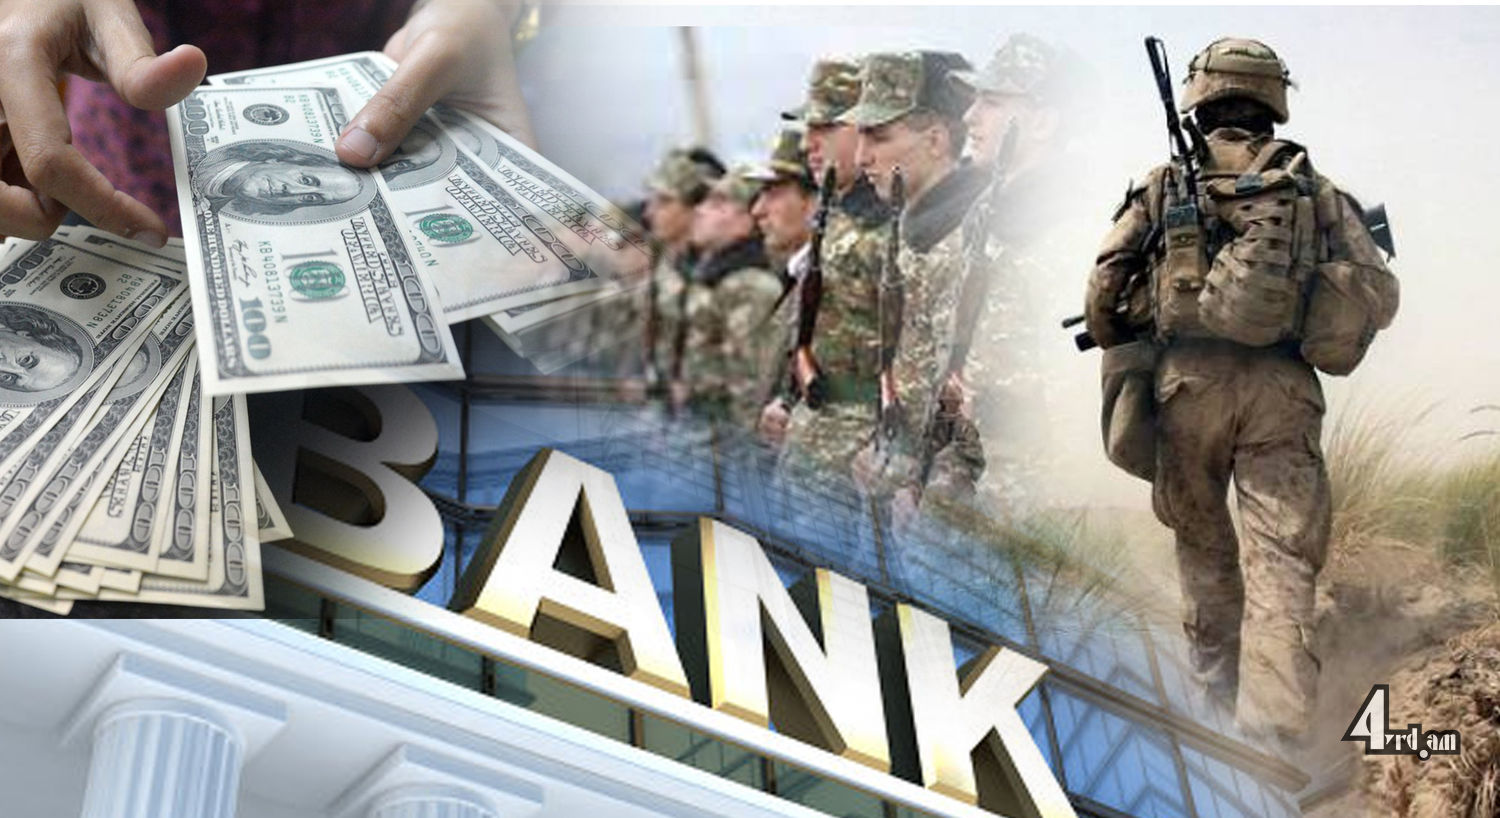 Բանակի փող կհավաքեն. բանկերն էլ կաջակցեն